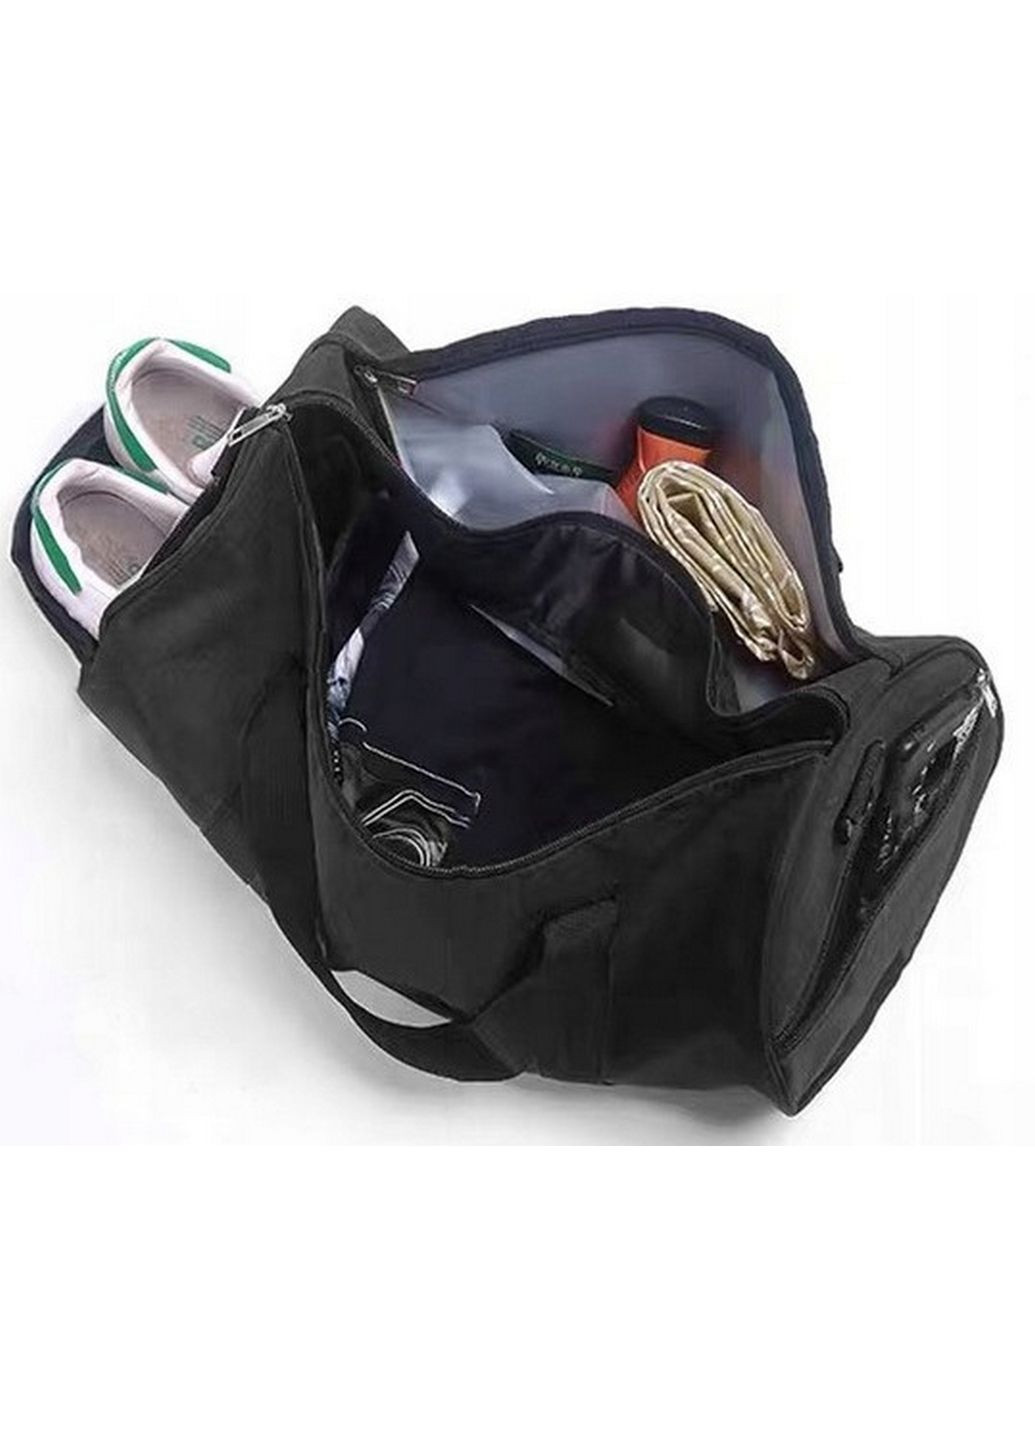 Cпортивная сумка с отделом для обуви 25L Strado (279318132)